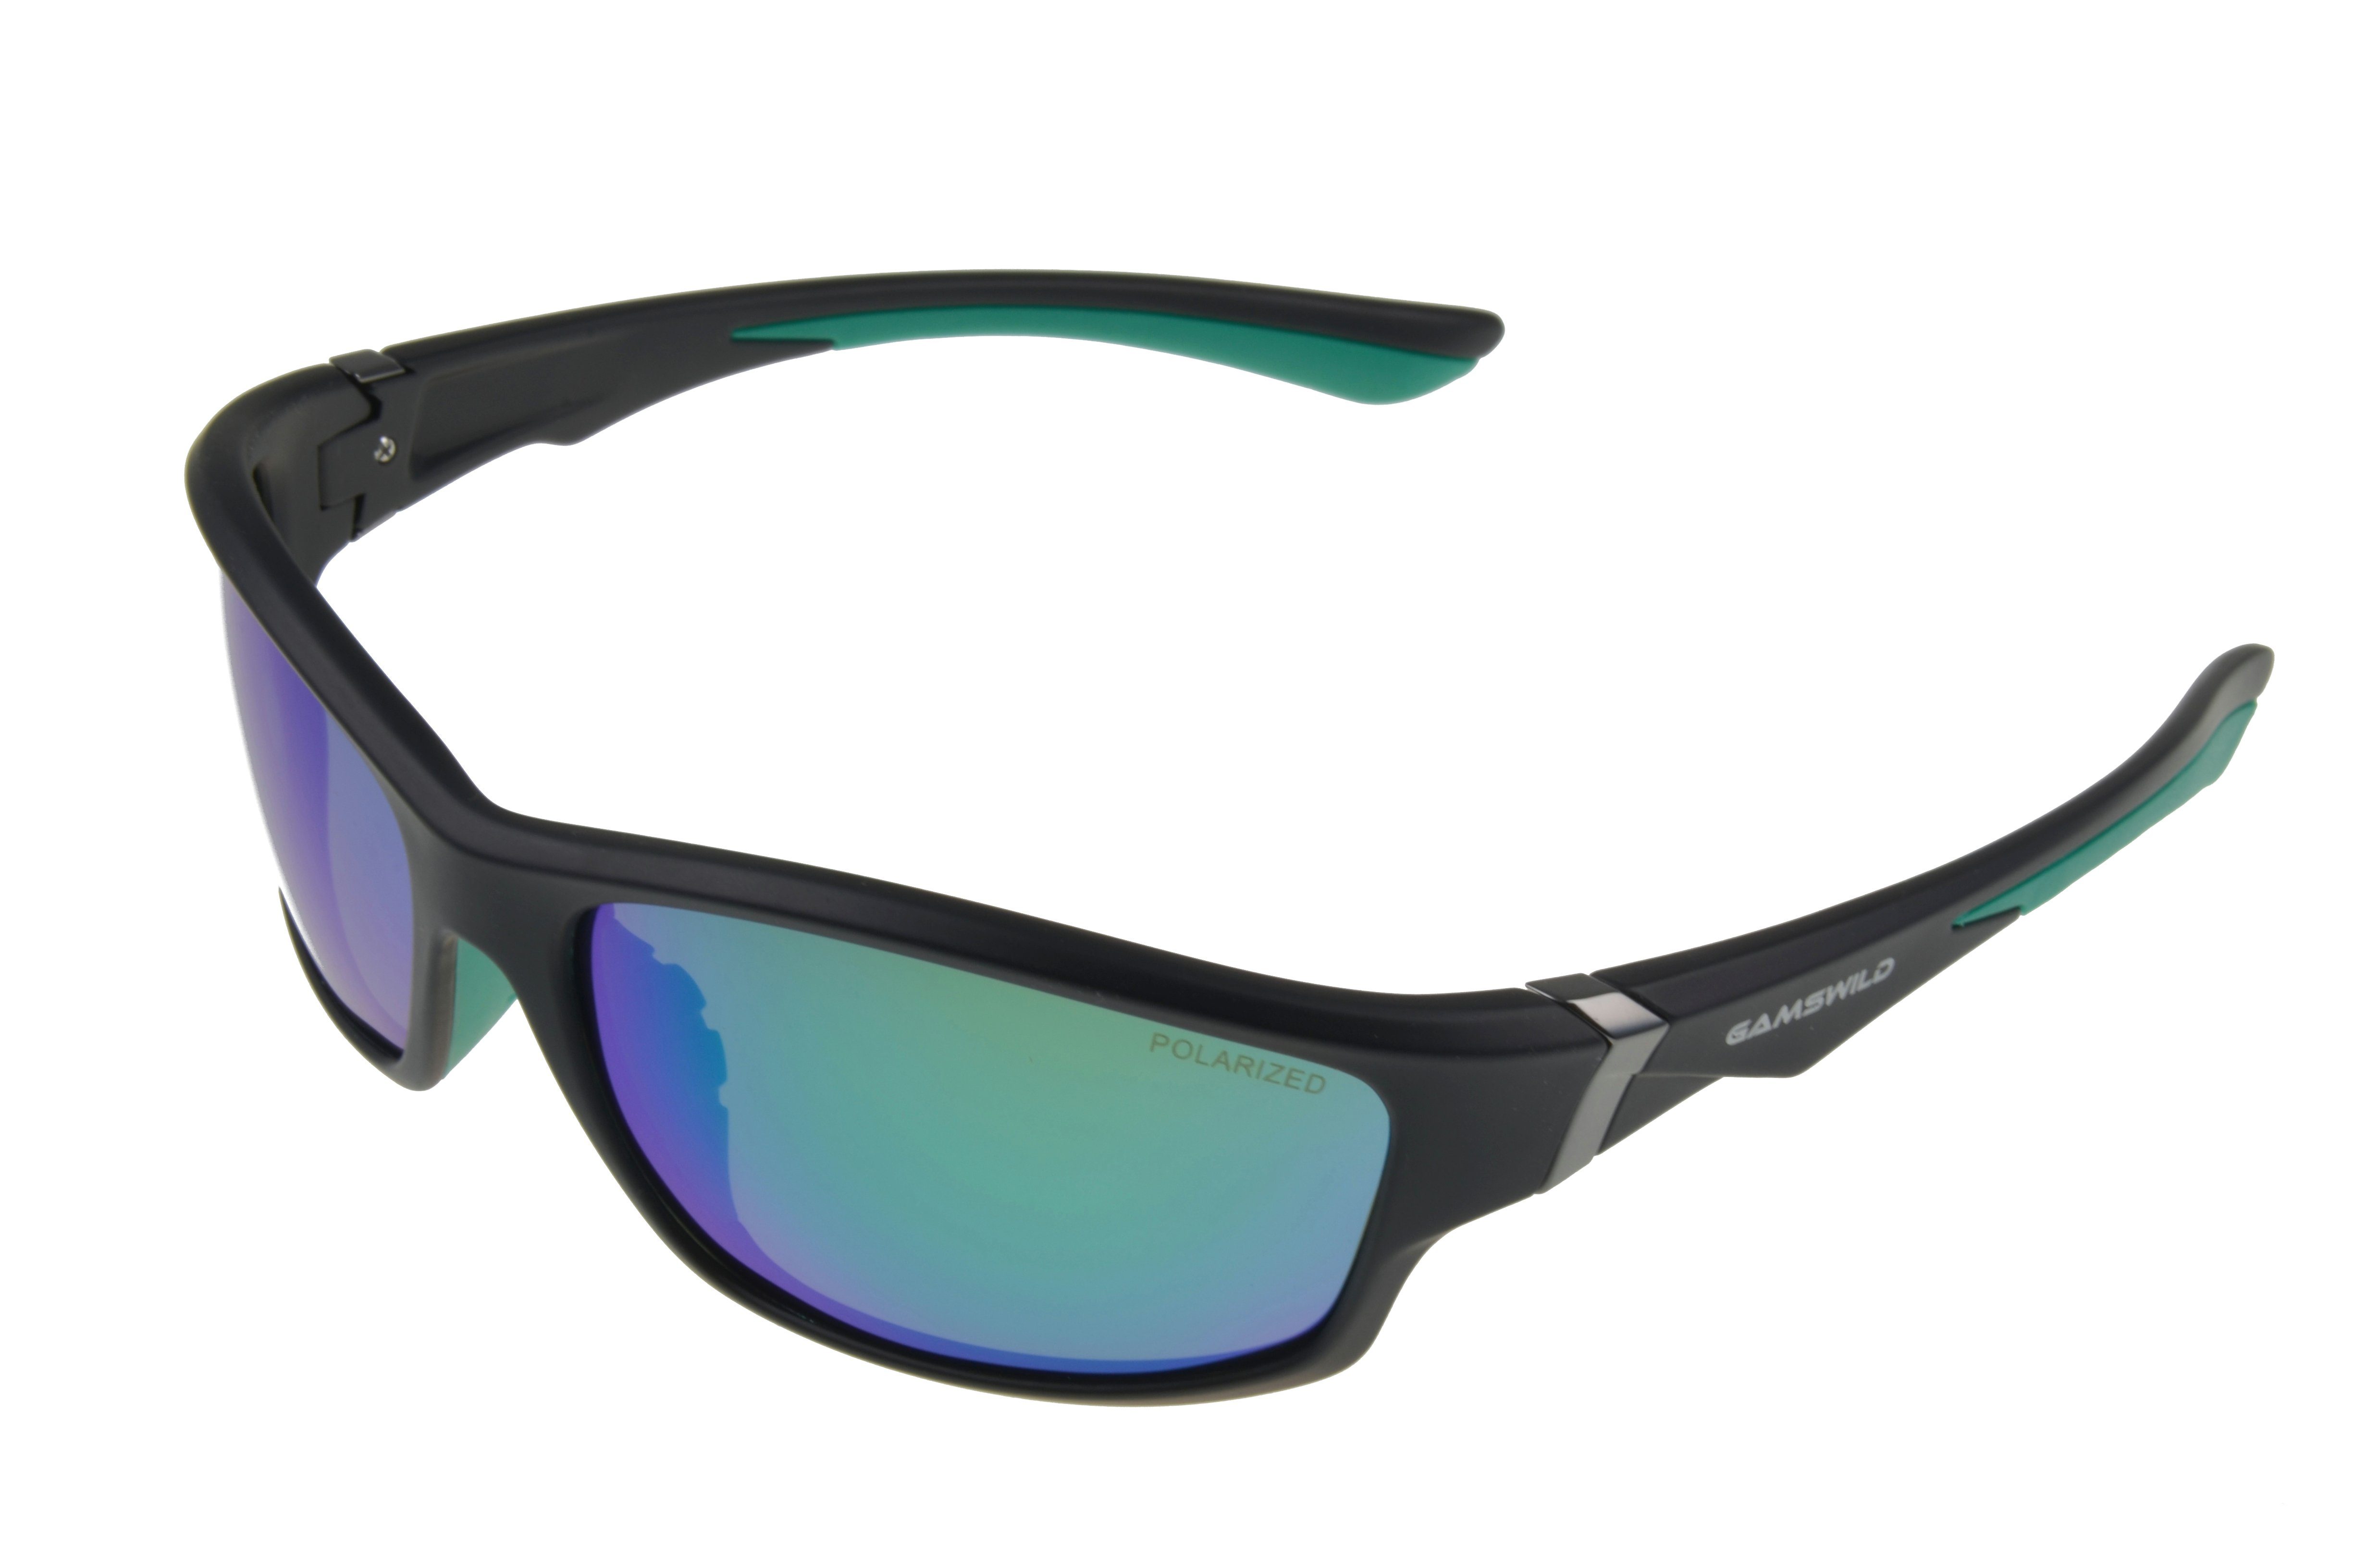 Gamswild Sportbrille WS6036 Sportbrille Sonnenbrille Damen Herren Fahrradbrille Skibrille Unisex, blau, lila, grün, polarisierte Gläser